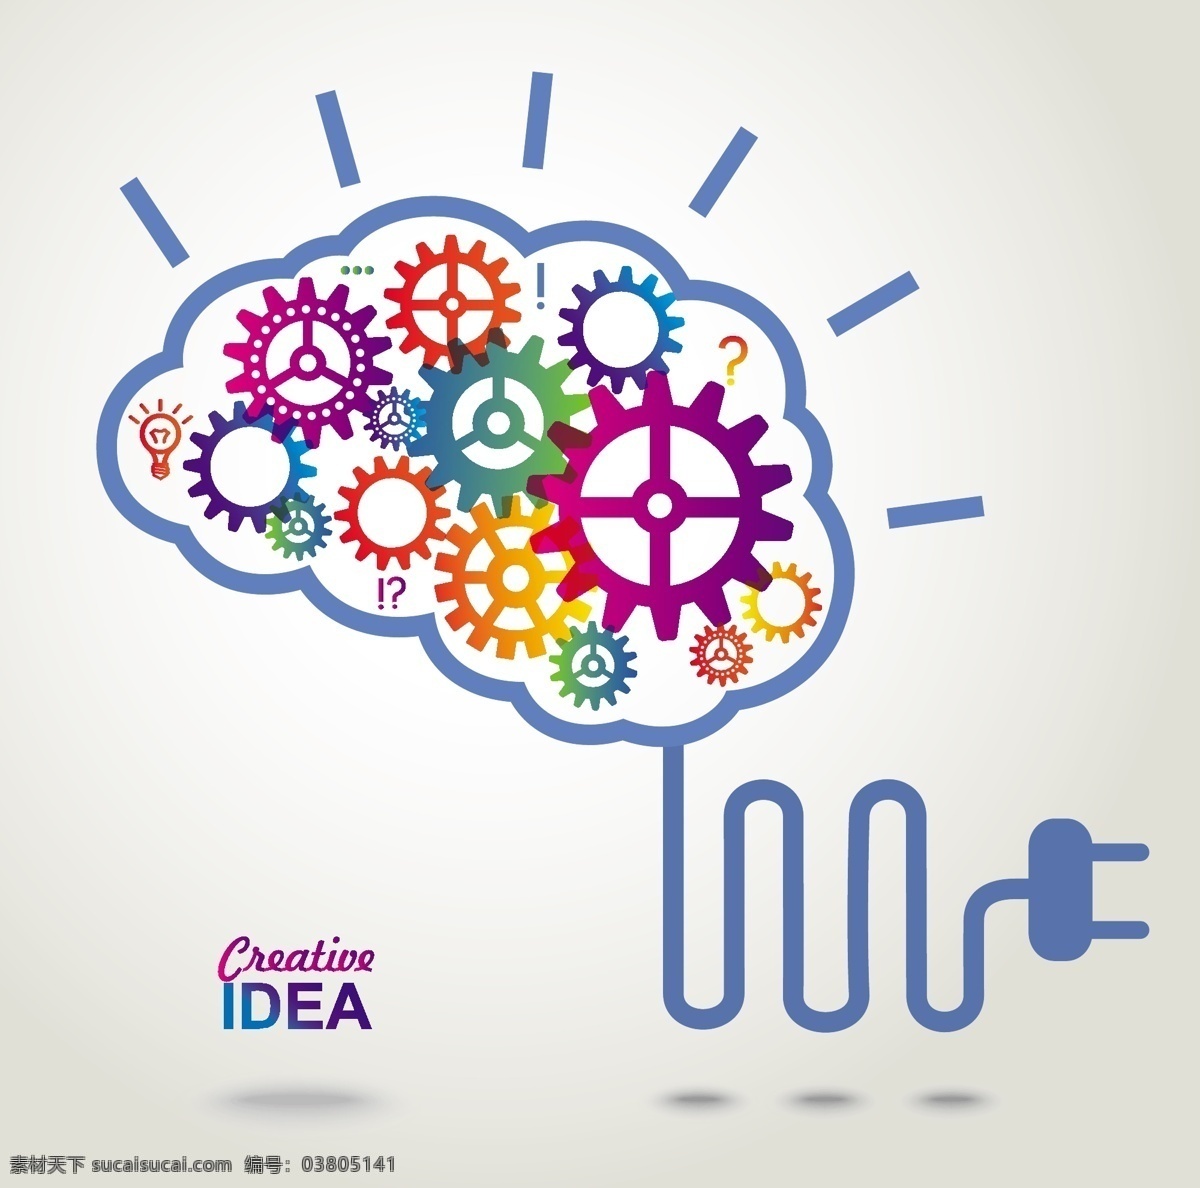 创意大脑概念 商务创意 大脑 齿轮 思维 主意 商务策略 商务理念 商务经营 商务概念 商务创新 商务头脑 矢量